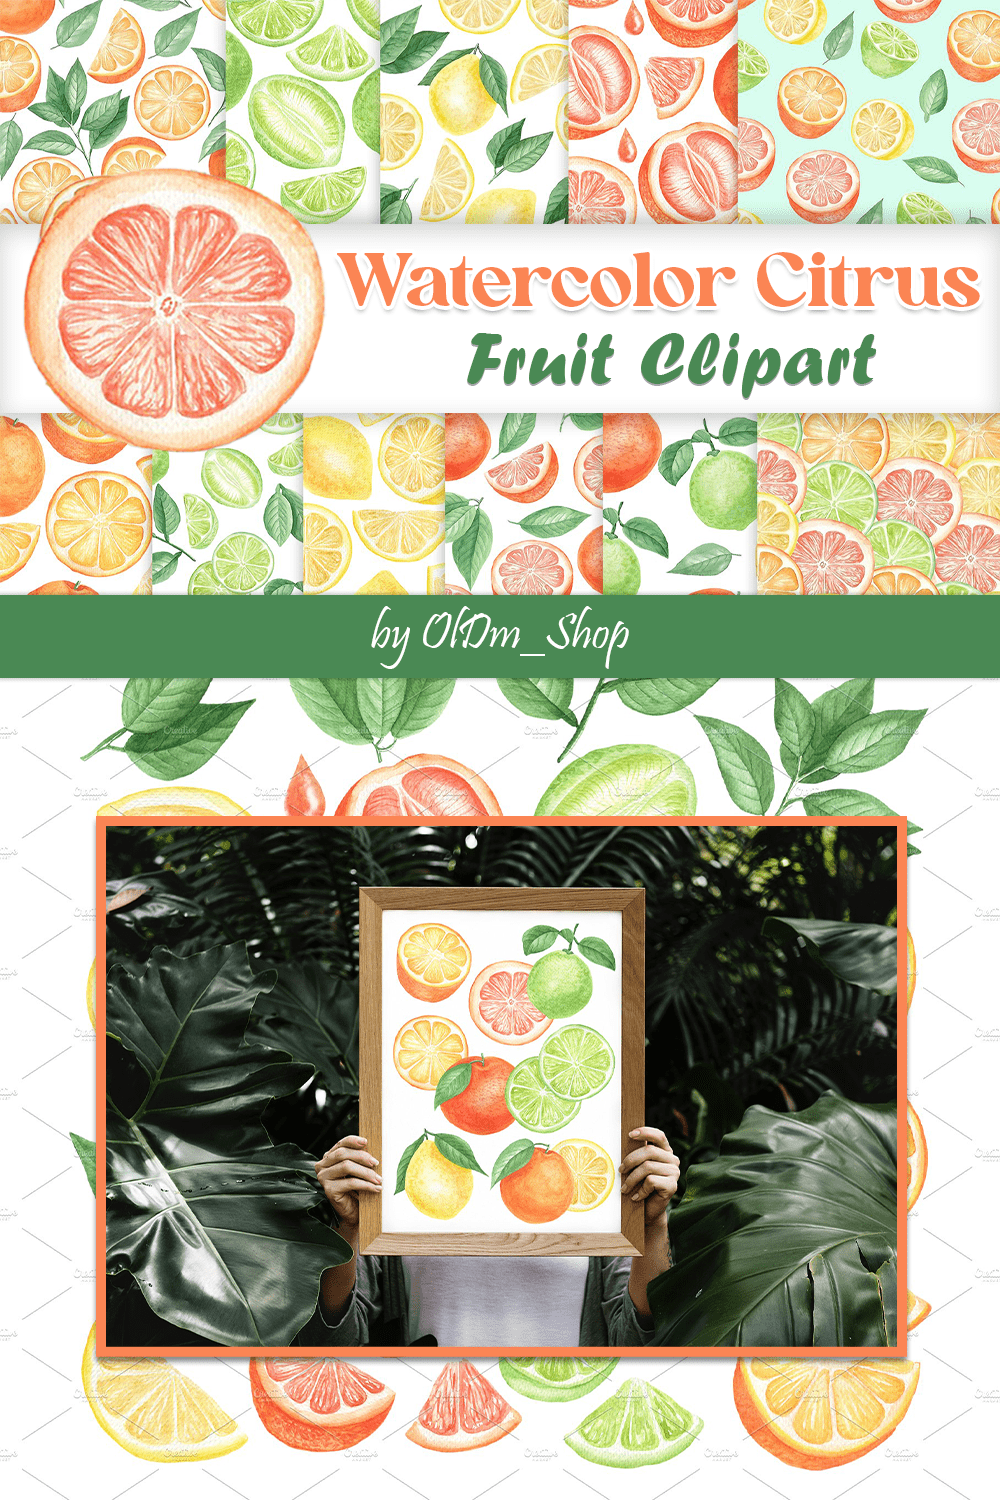 watercolor citrus fruit clipart pinterest